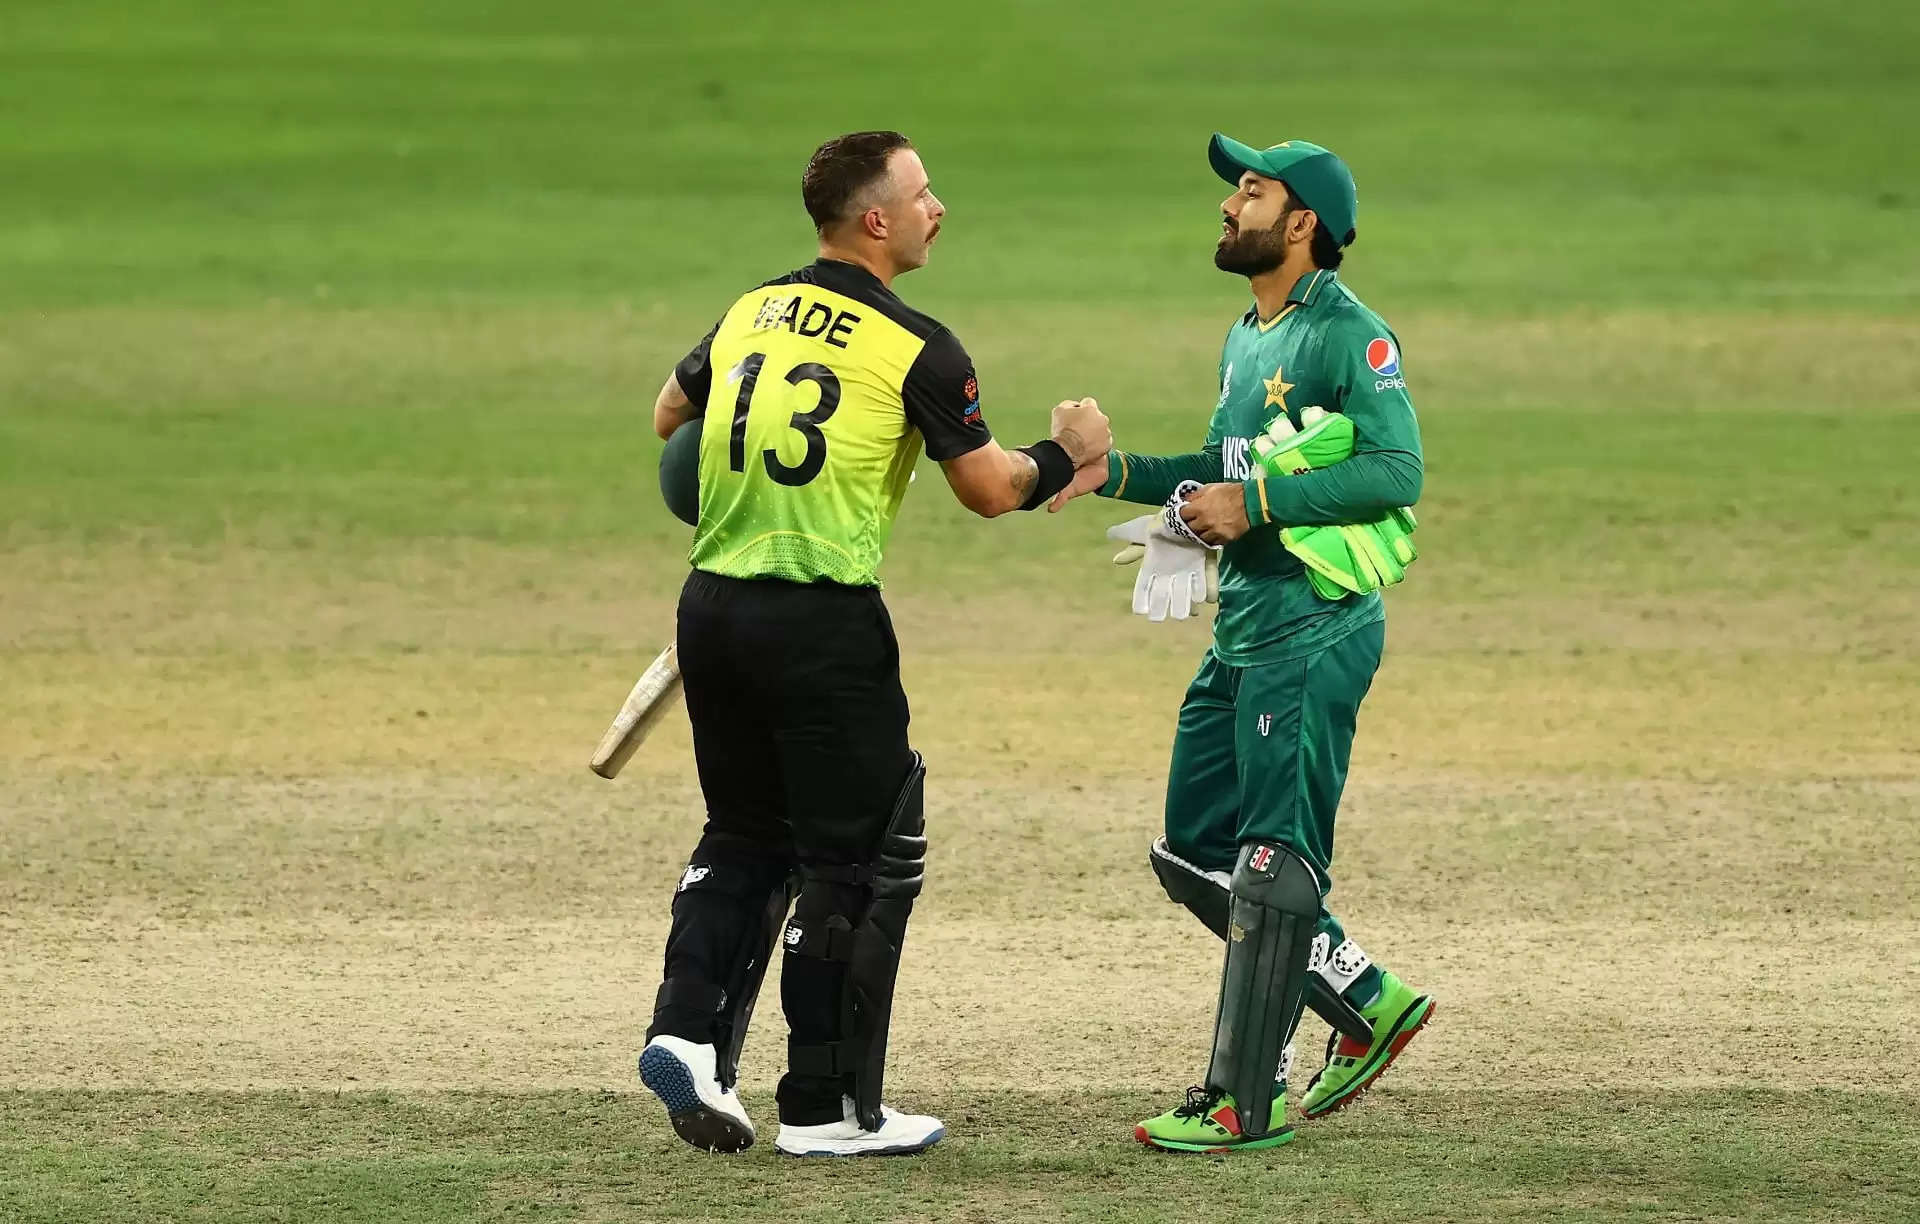 पाकिस्तान दौरे के लिए ऑस्ट्रेलिया के खिलाड़ियों को मिला ACA का सपोर्ट